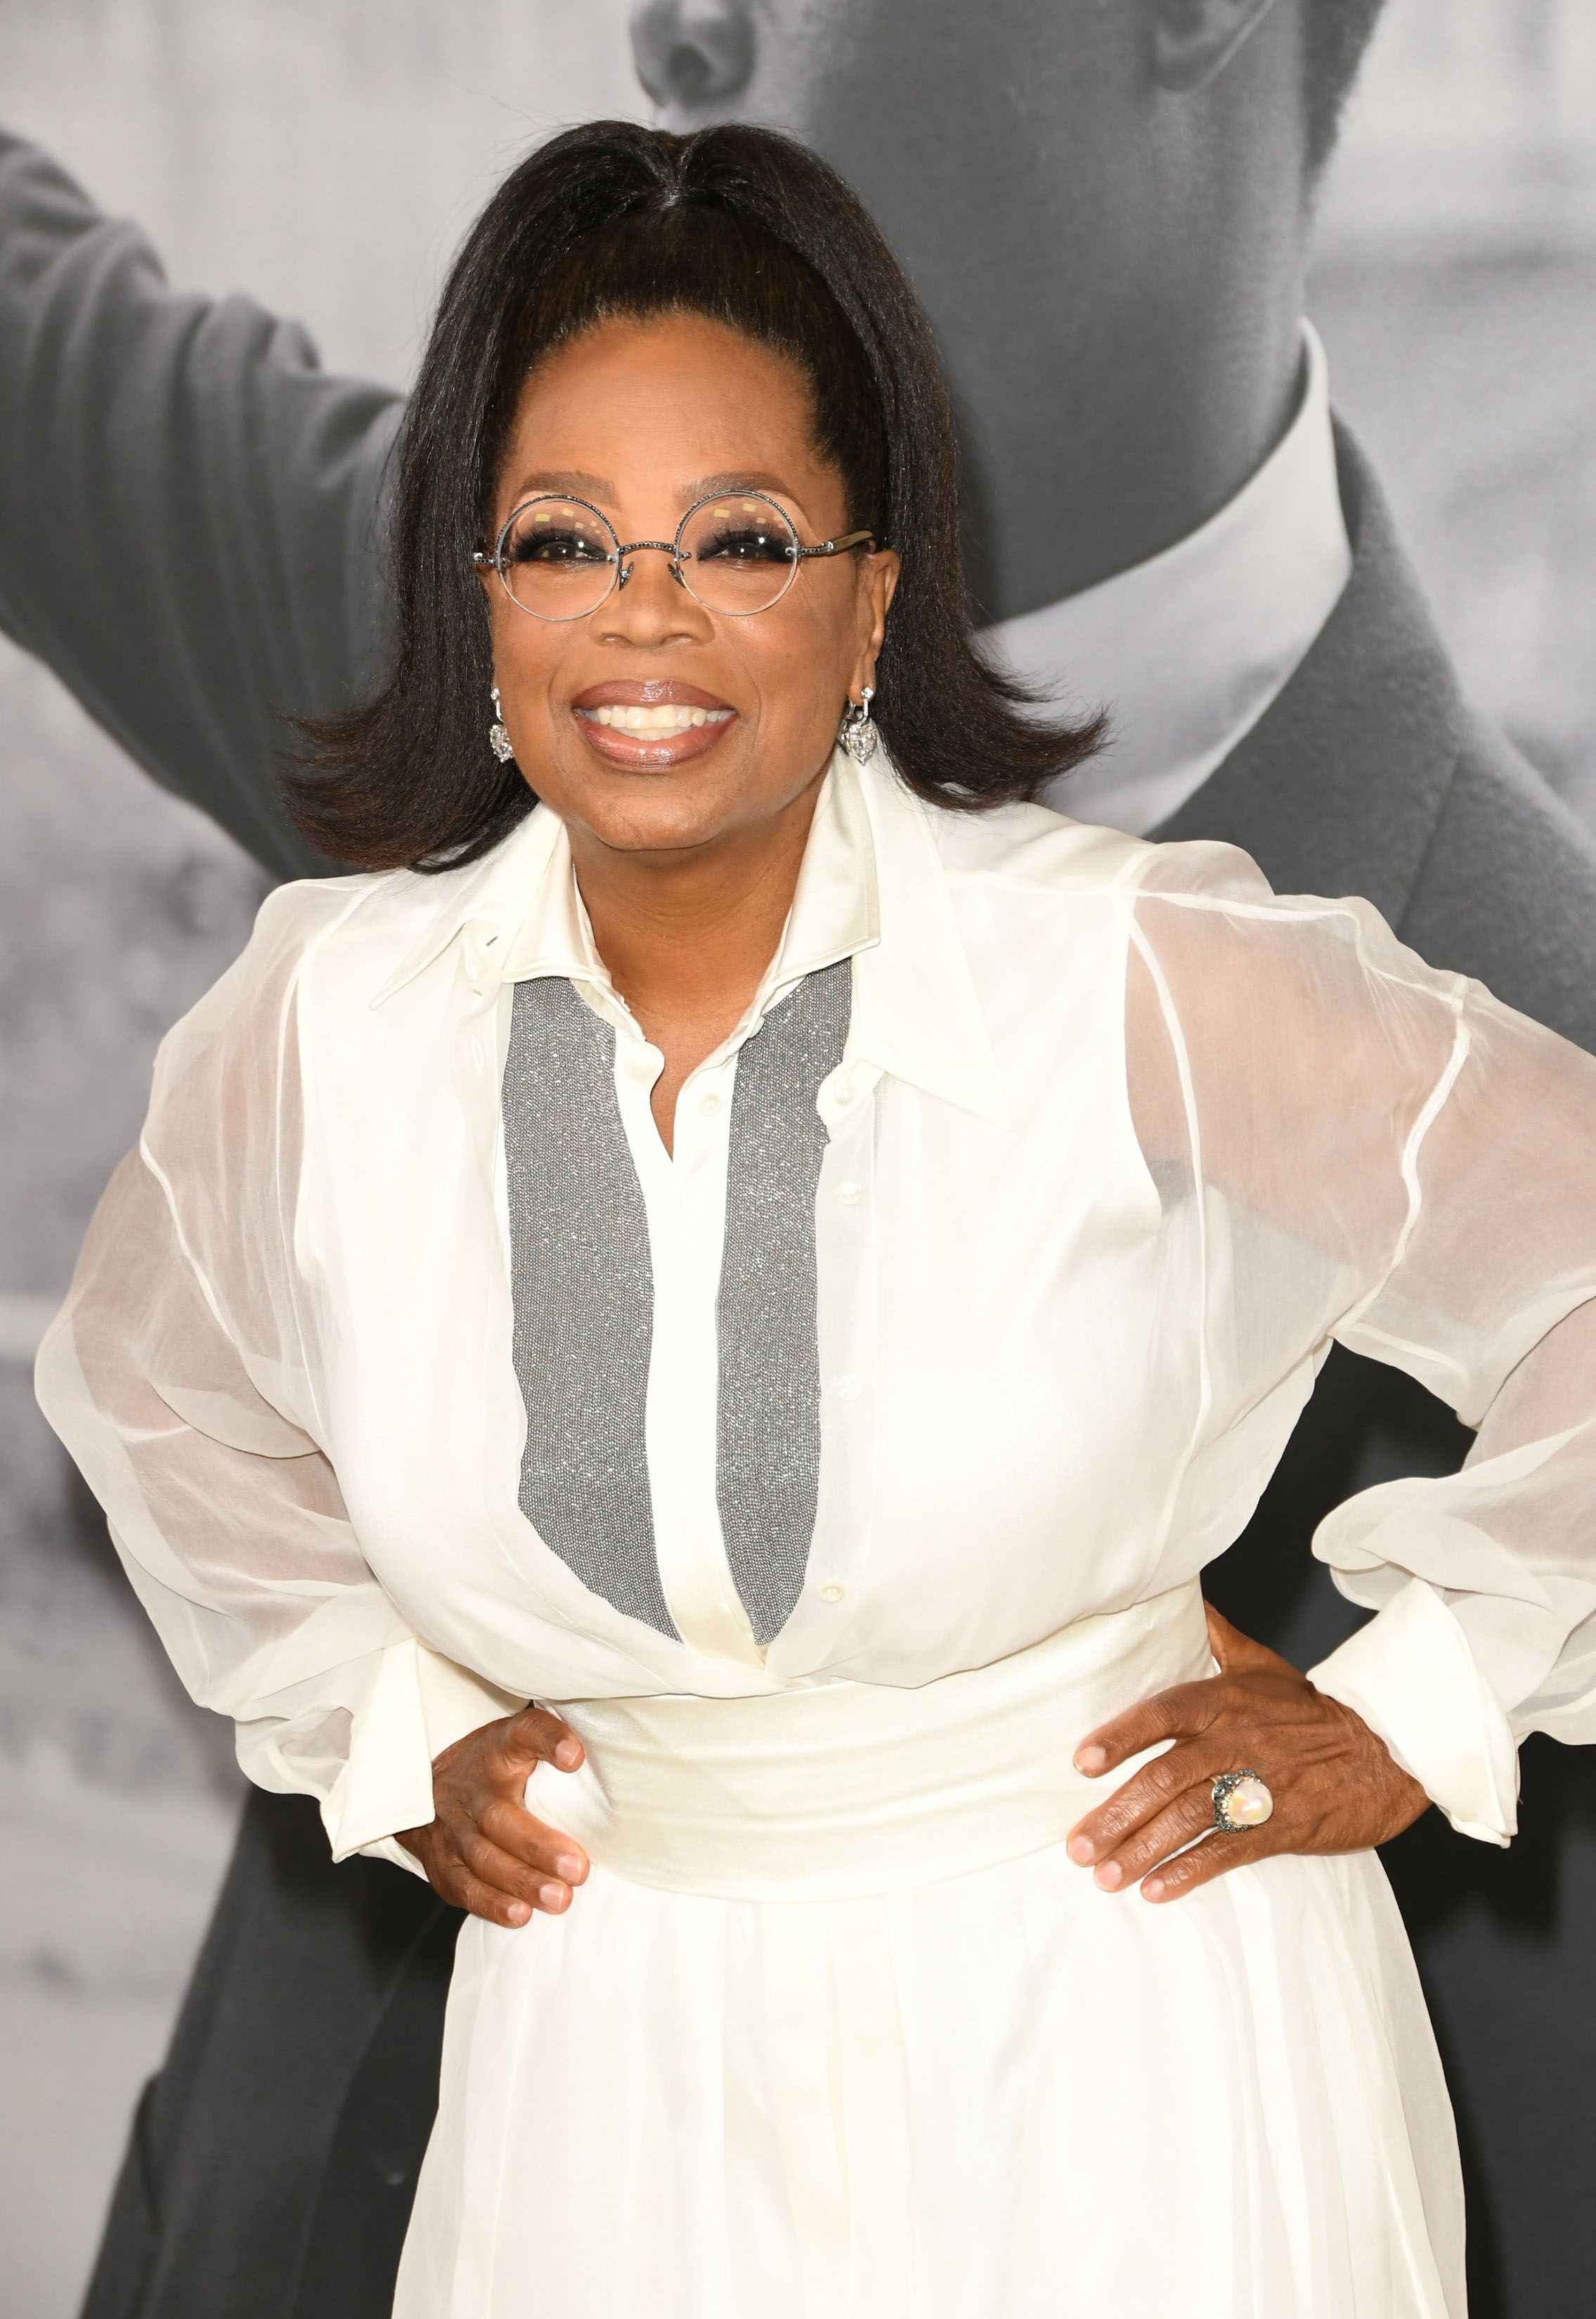 Apesar de seu status, Oprah Winfrey ainda está sendo rejeitada por comediantes para entrevistas